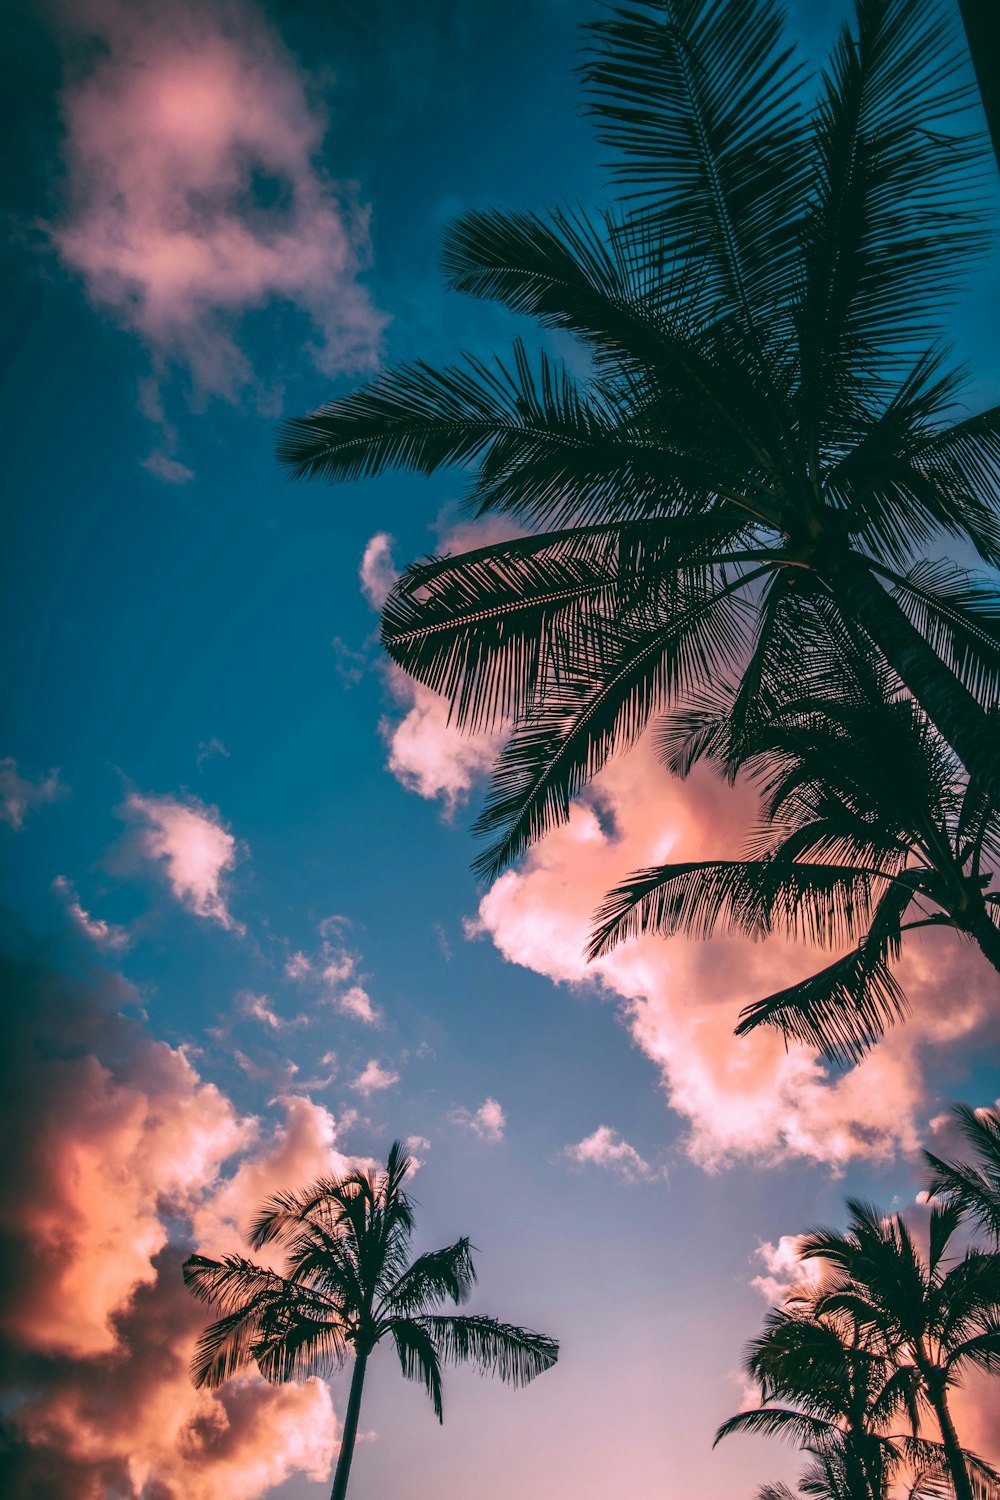 Photographie en contre-plongée de palmiers